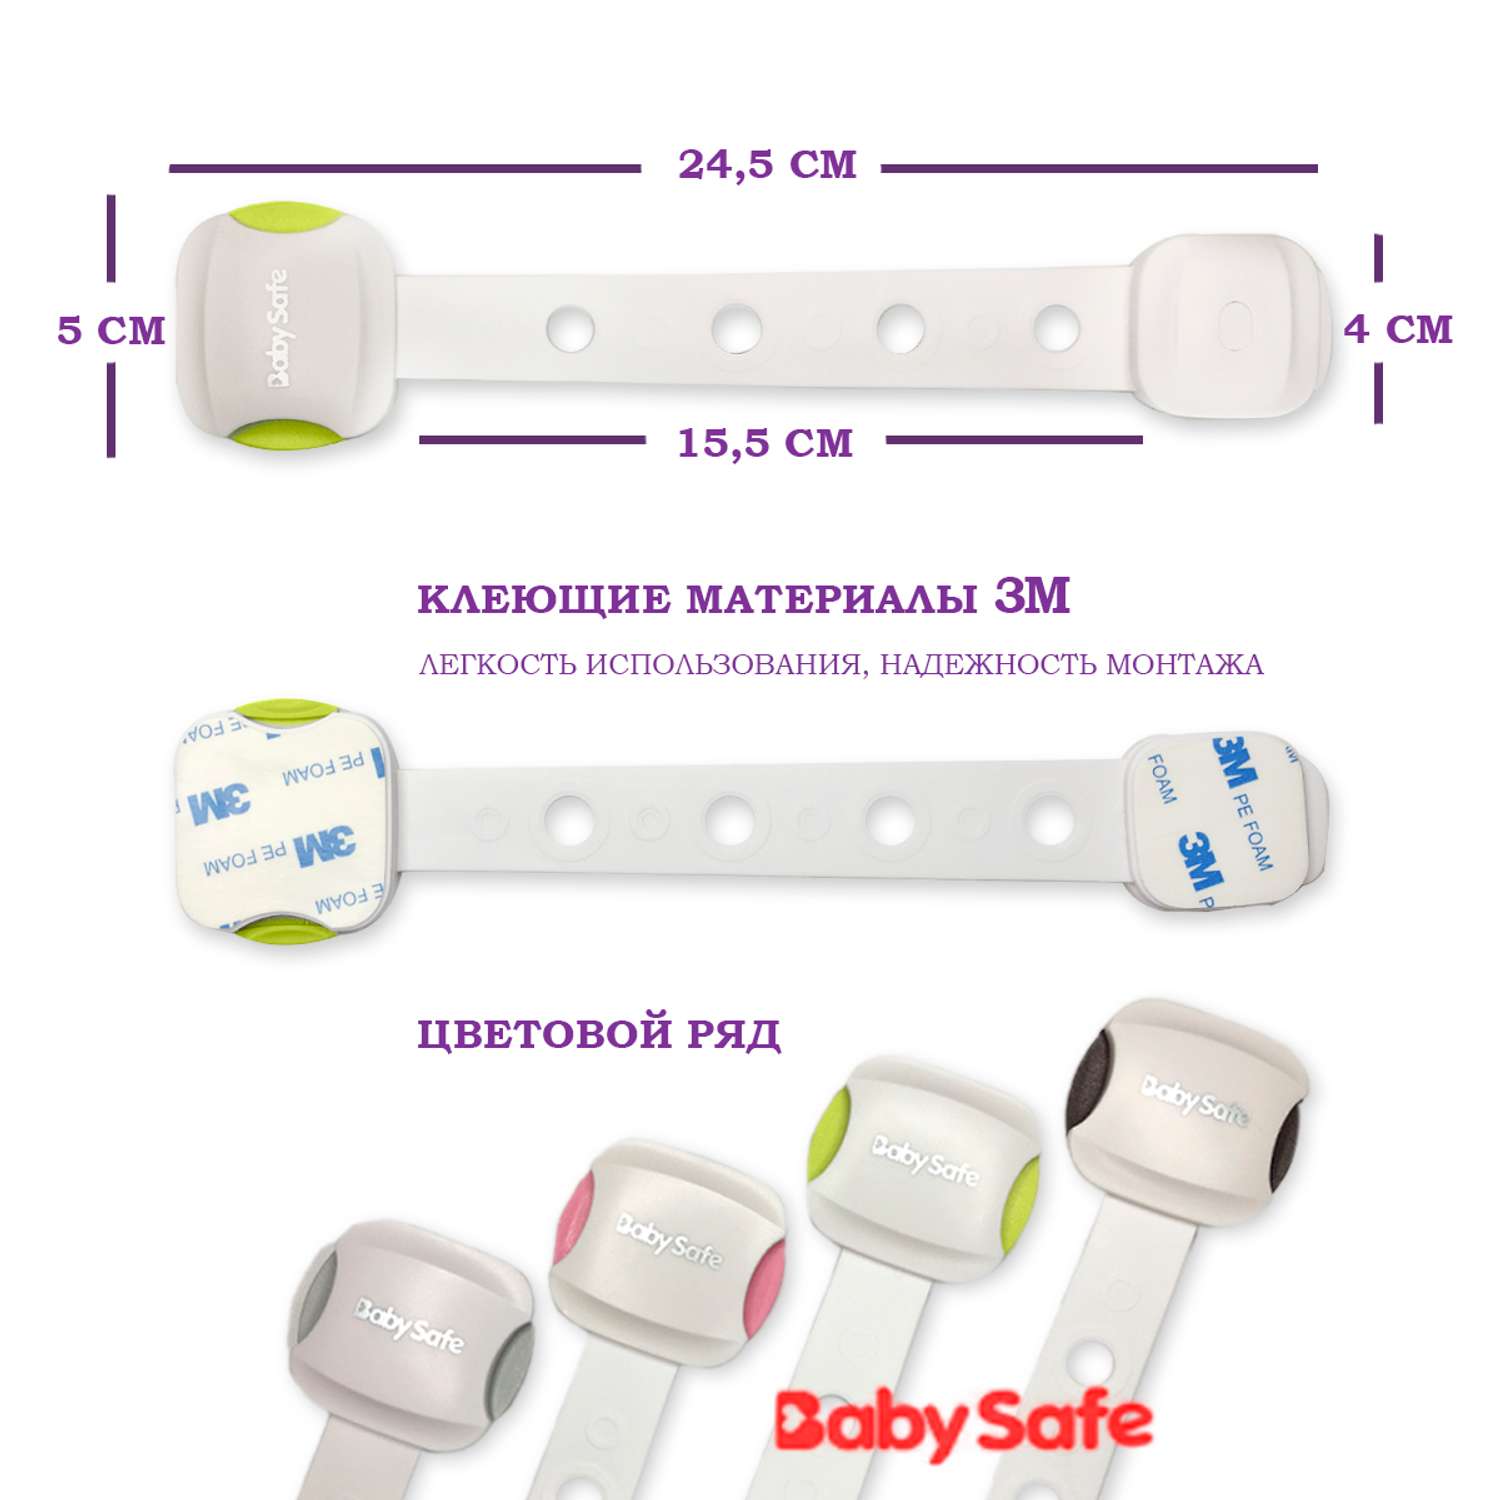 Набор блокираторов Baby Safe для дверей ящиков и шкафов и кухонной техники 5 шт цвет зеленый - фото 2